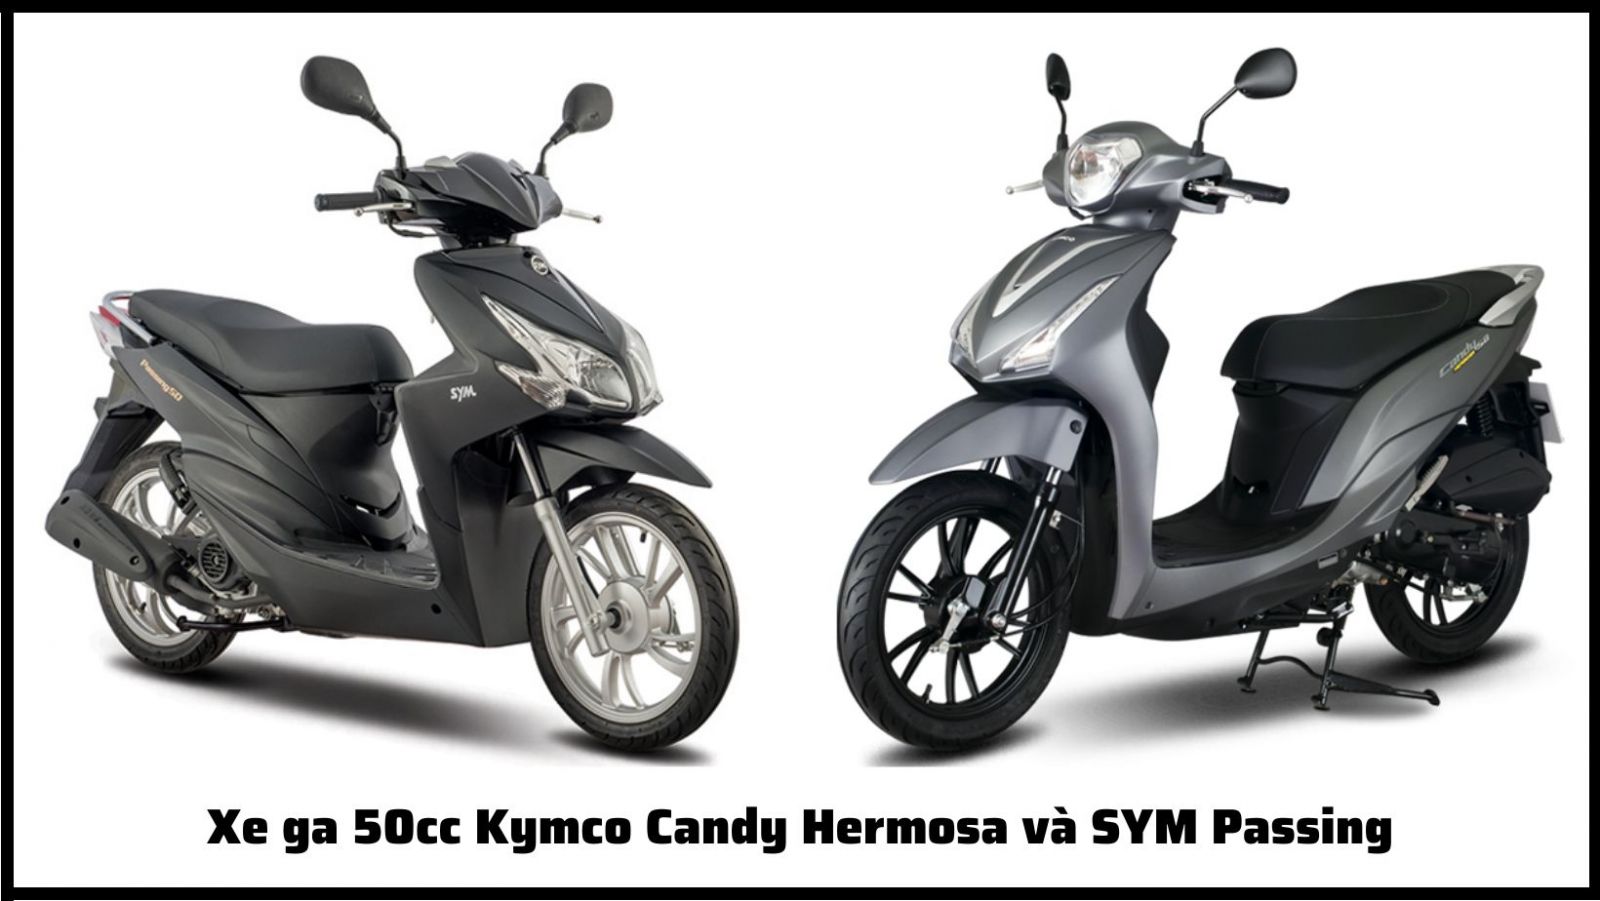 Top 3 dòng xe máy 50cc thương hiệu Kymco được đánh giá cao